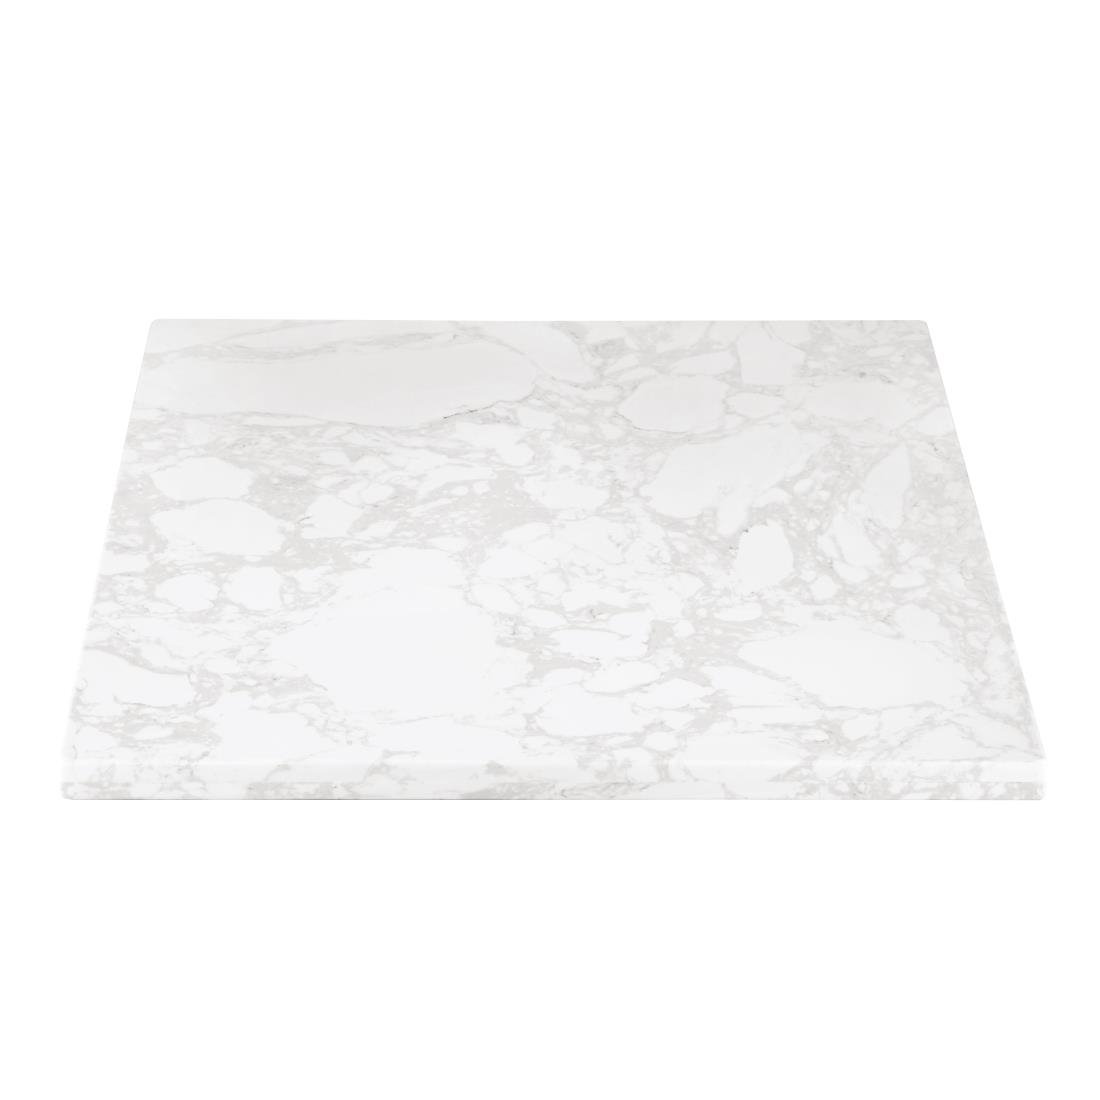 Plateau de table carré effet marbre Bolero blanc 600mm